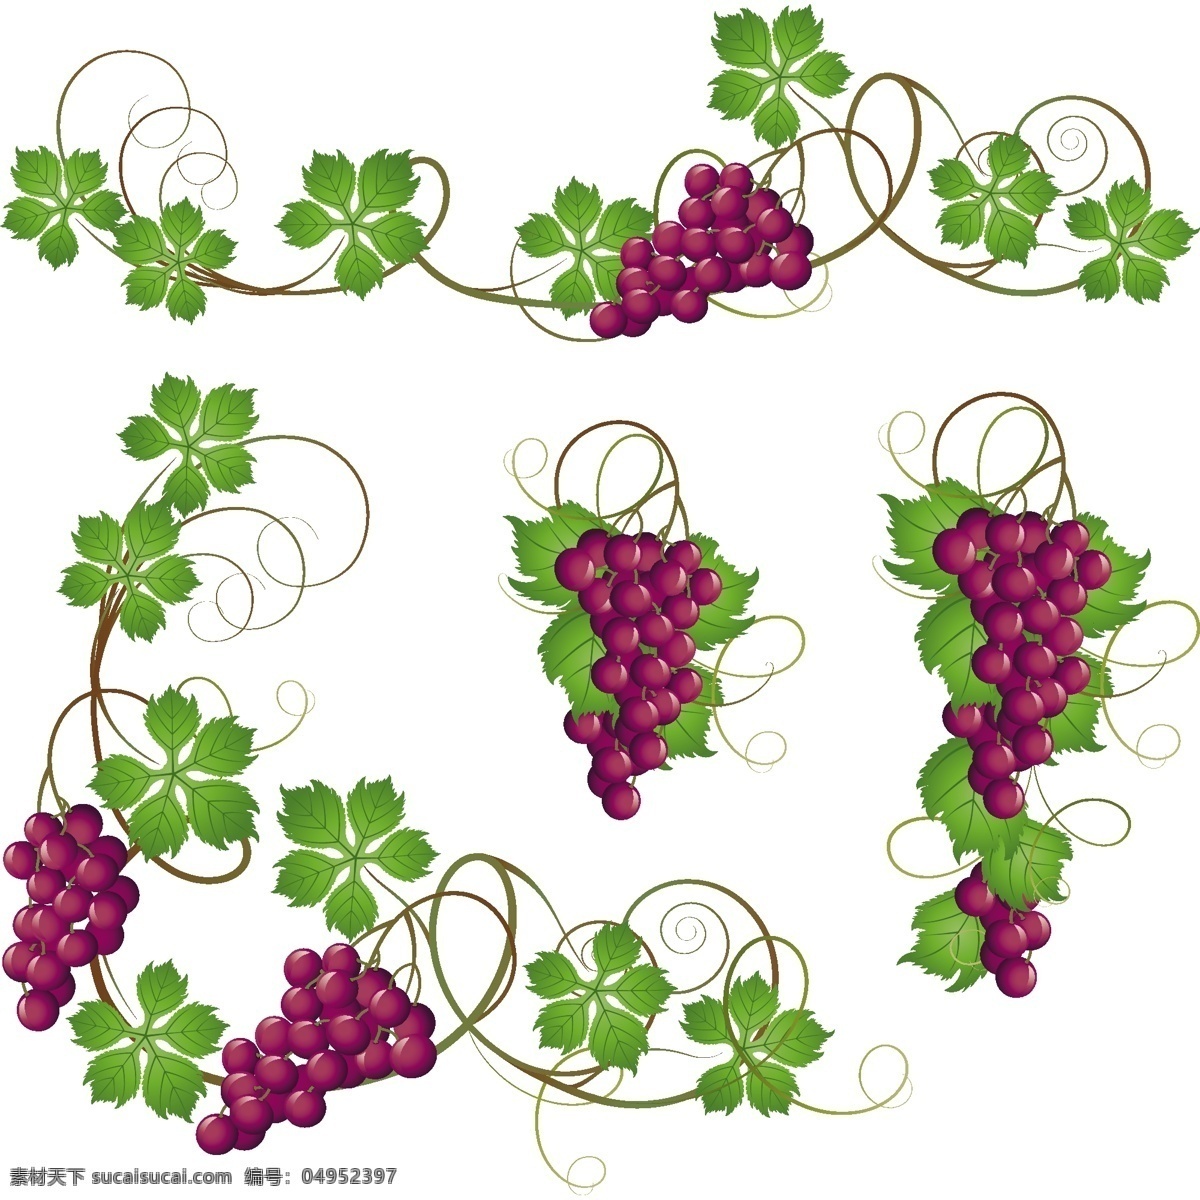 紫 葡萄 串 叶 矢量 葡萄藤 葡萄叶 葡萄串 矢量素材 水果 生物世界